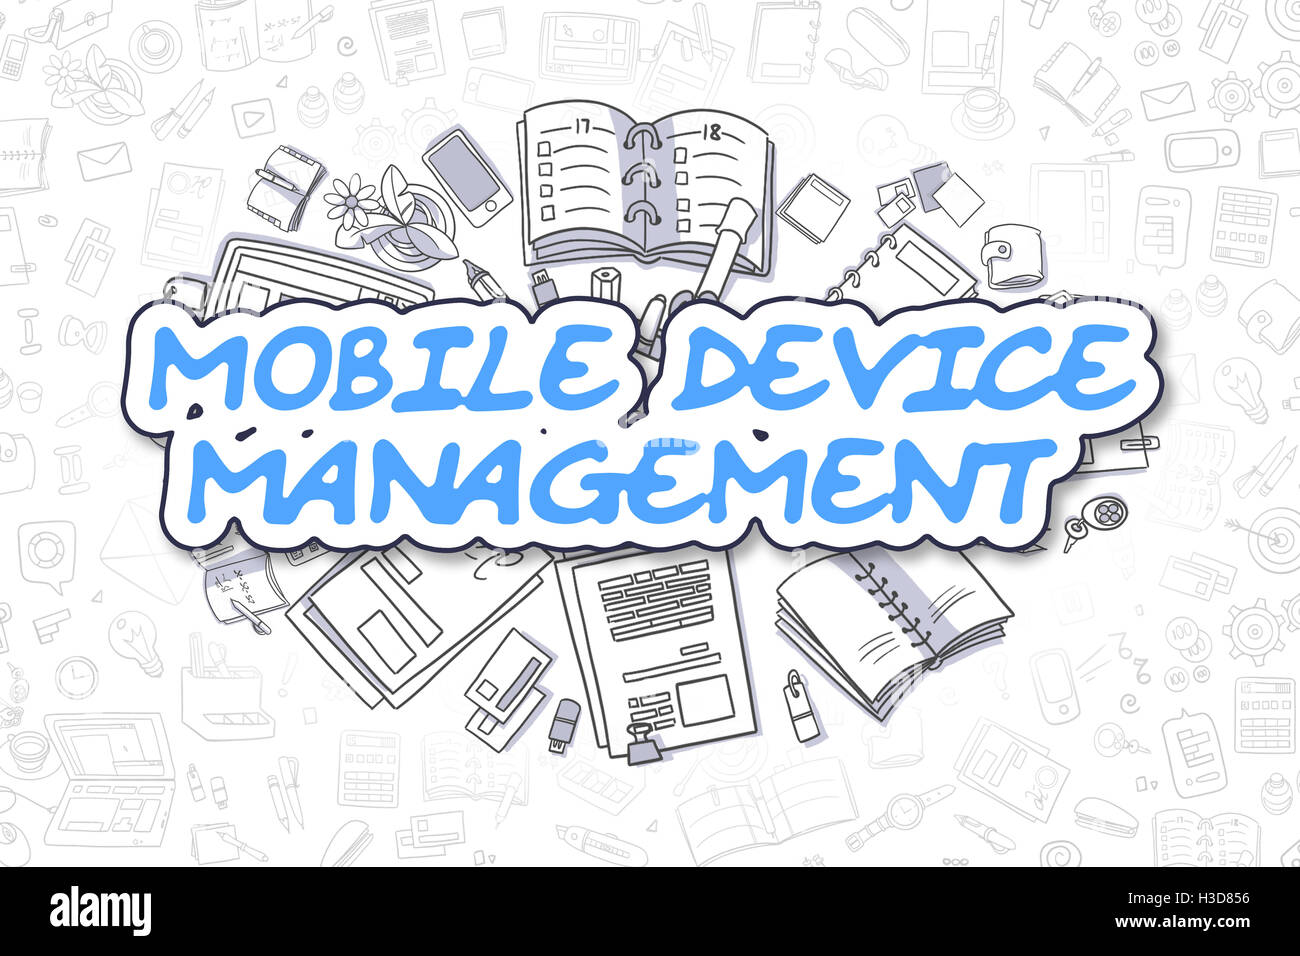 La gestion des appareils mobiles - Concept d'affaires. Banque D'Images